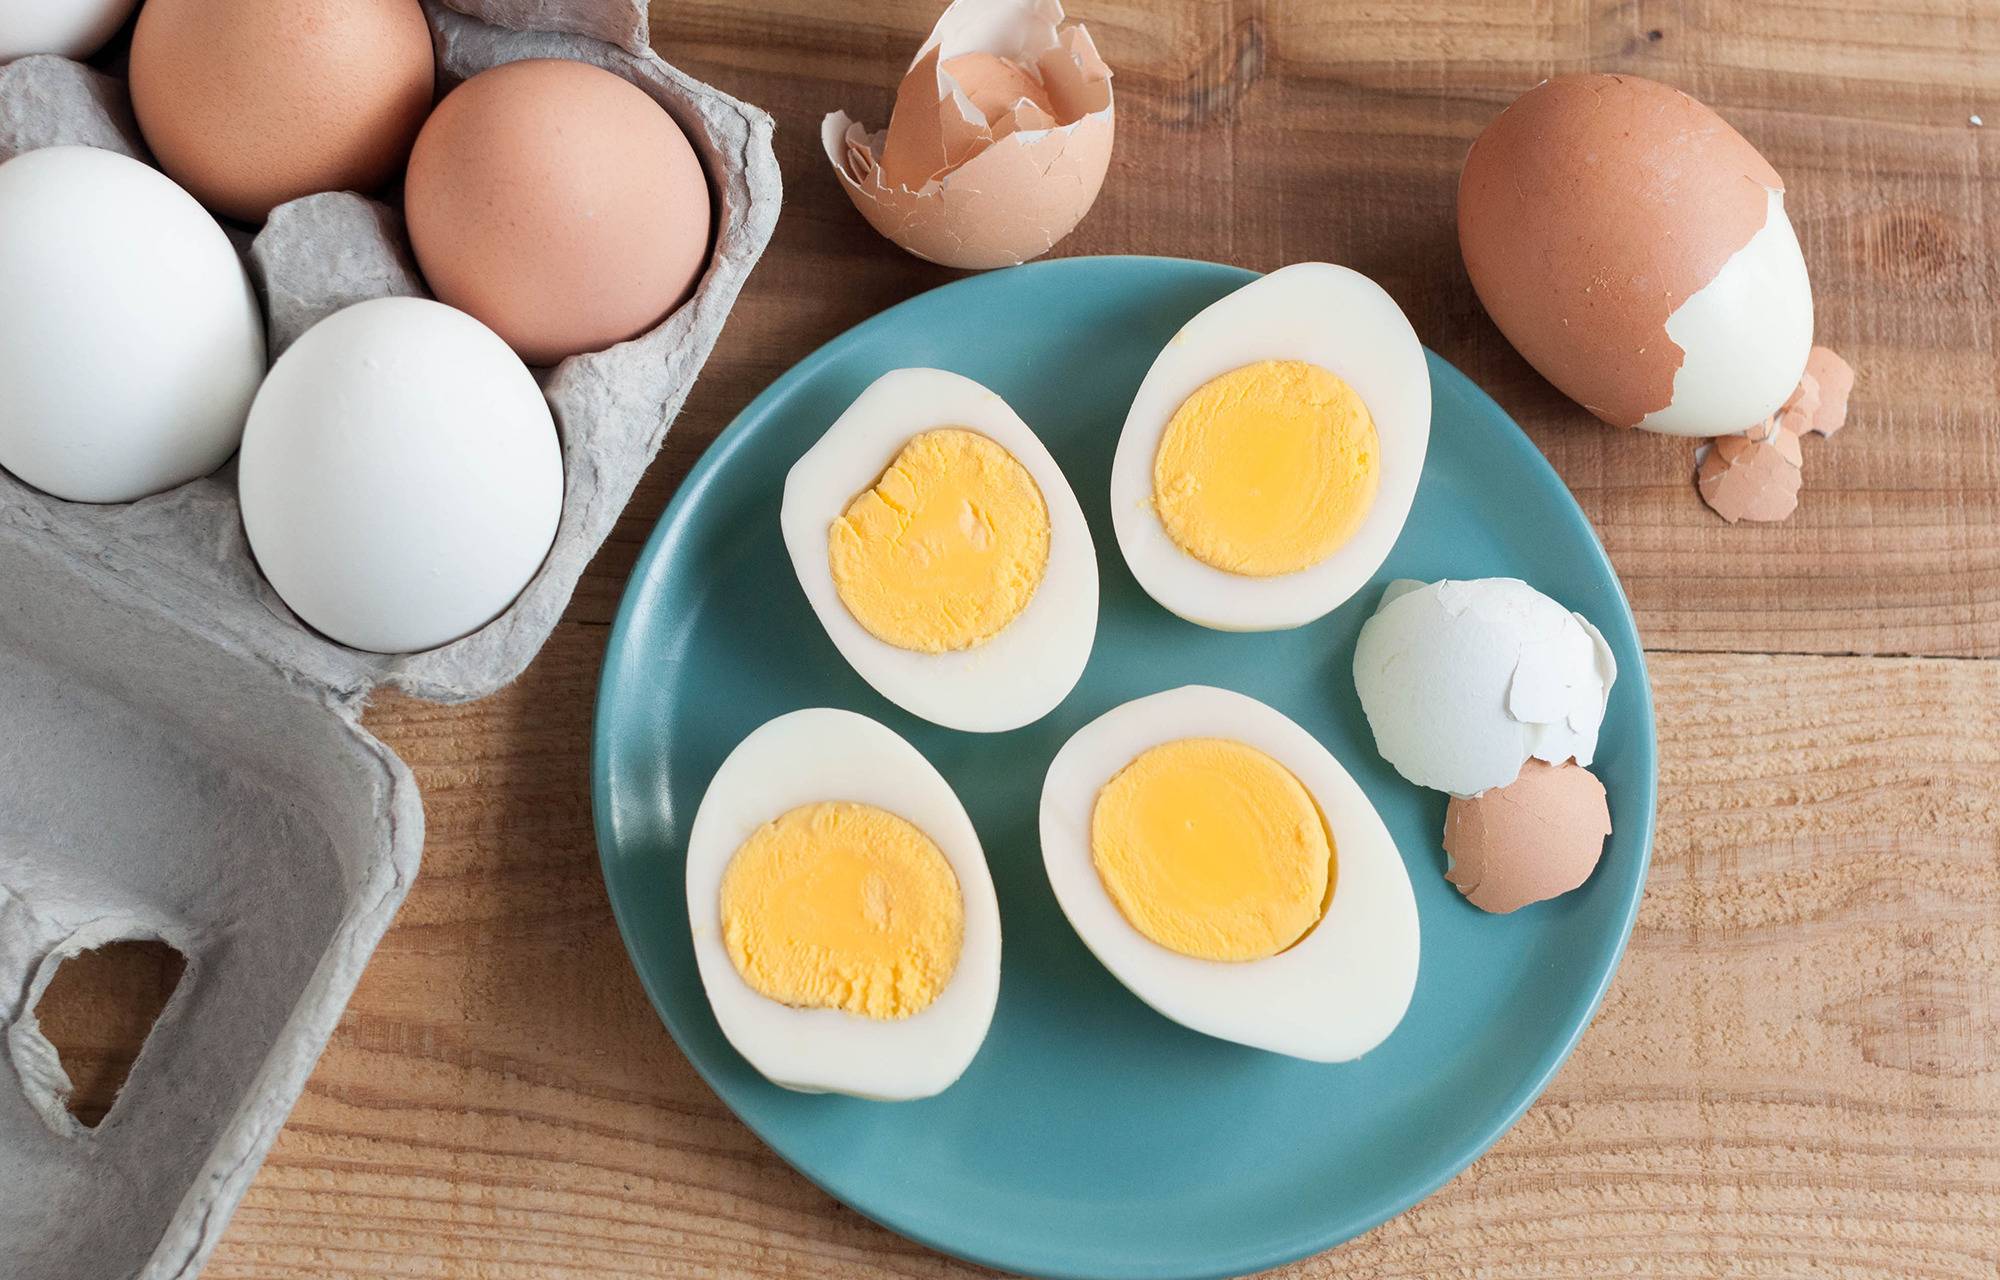 40 гривен за десяток: эксперты предупредили о подорожании куриных яиц